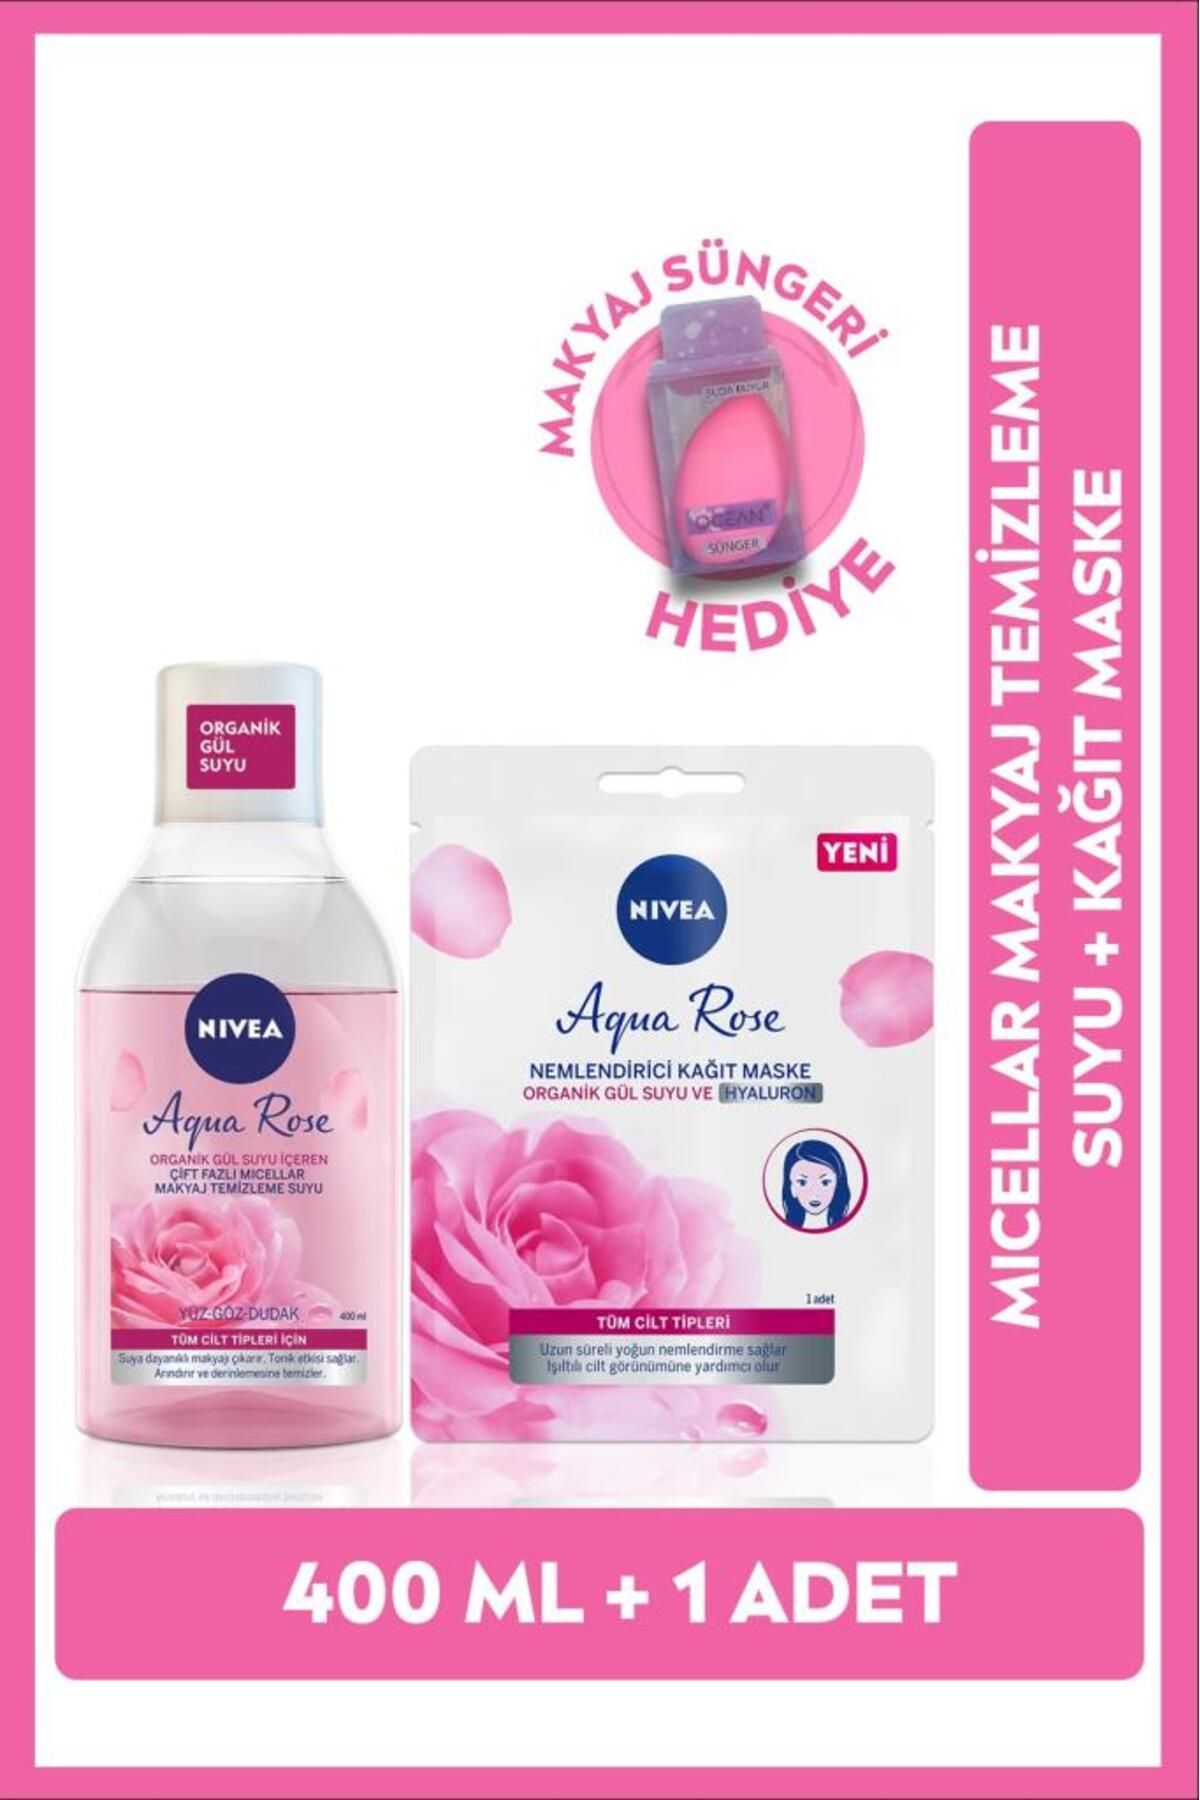 NIVEA Aqua Rose Organik Gül Suyu Içeren Makyaj Temizleme Suyu 400 ml Ve Yüz Maskesi 1 Adet